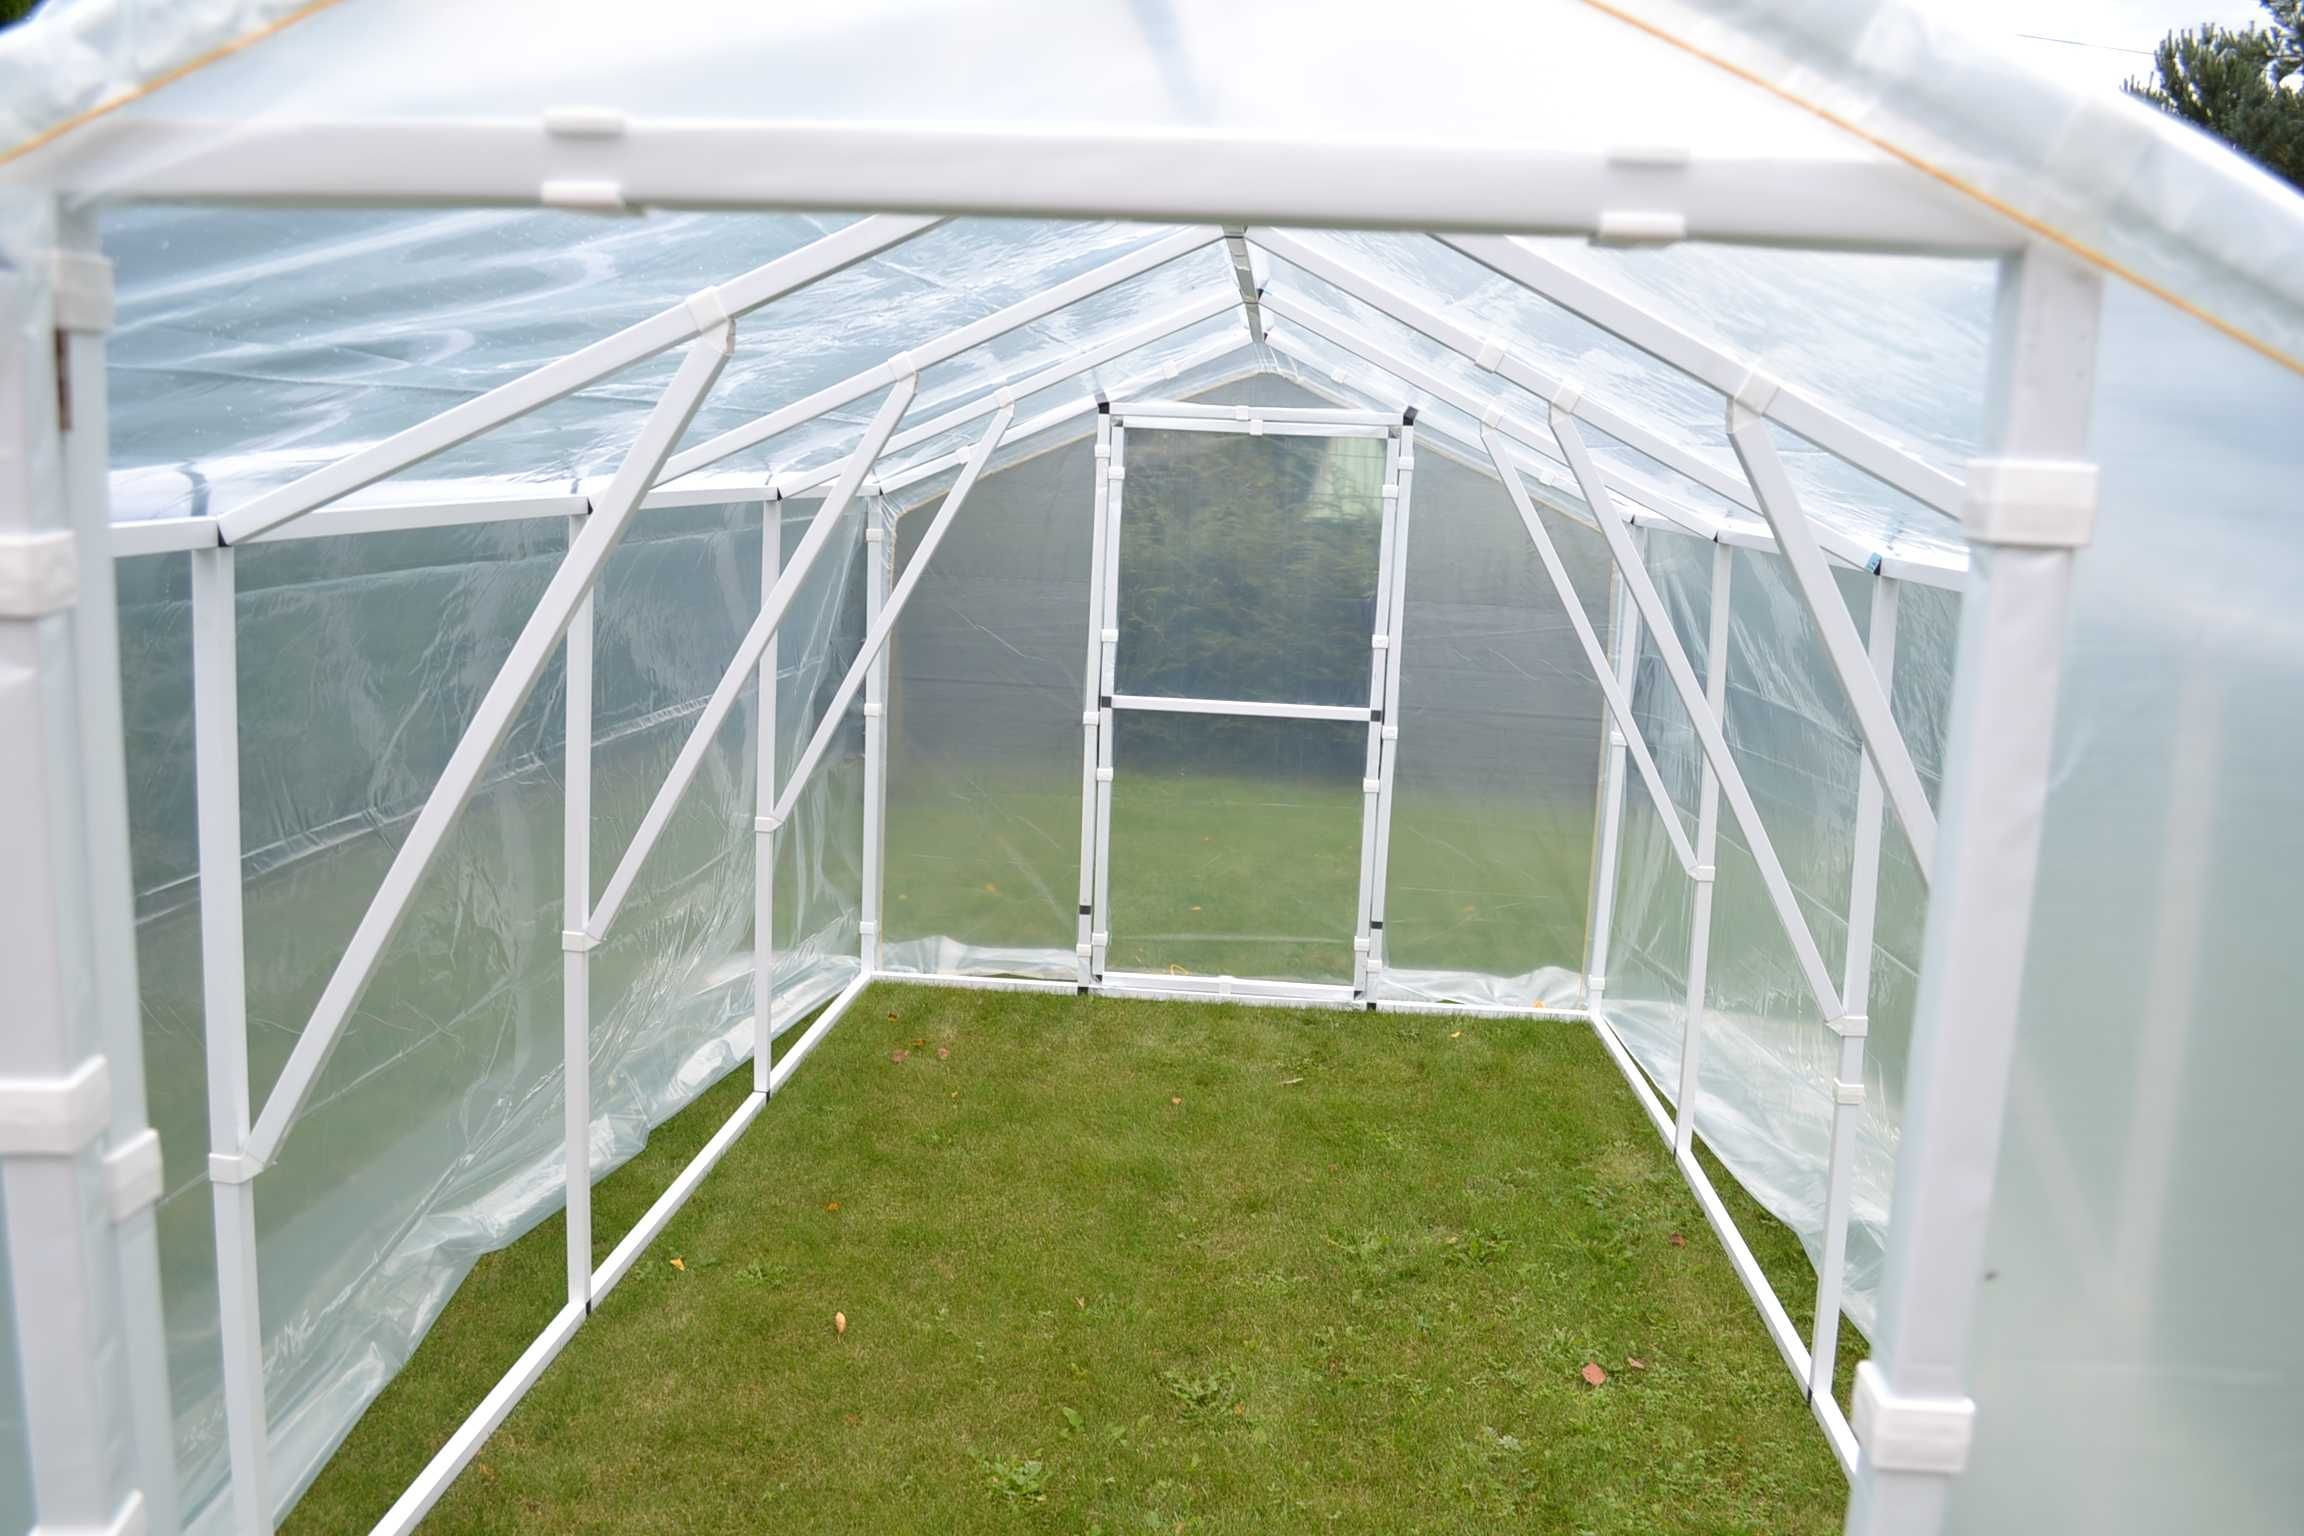 POLSKI 2x4 8m2 Tunel foliowy namiot na warzywa ogrodowy Szklarnia